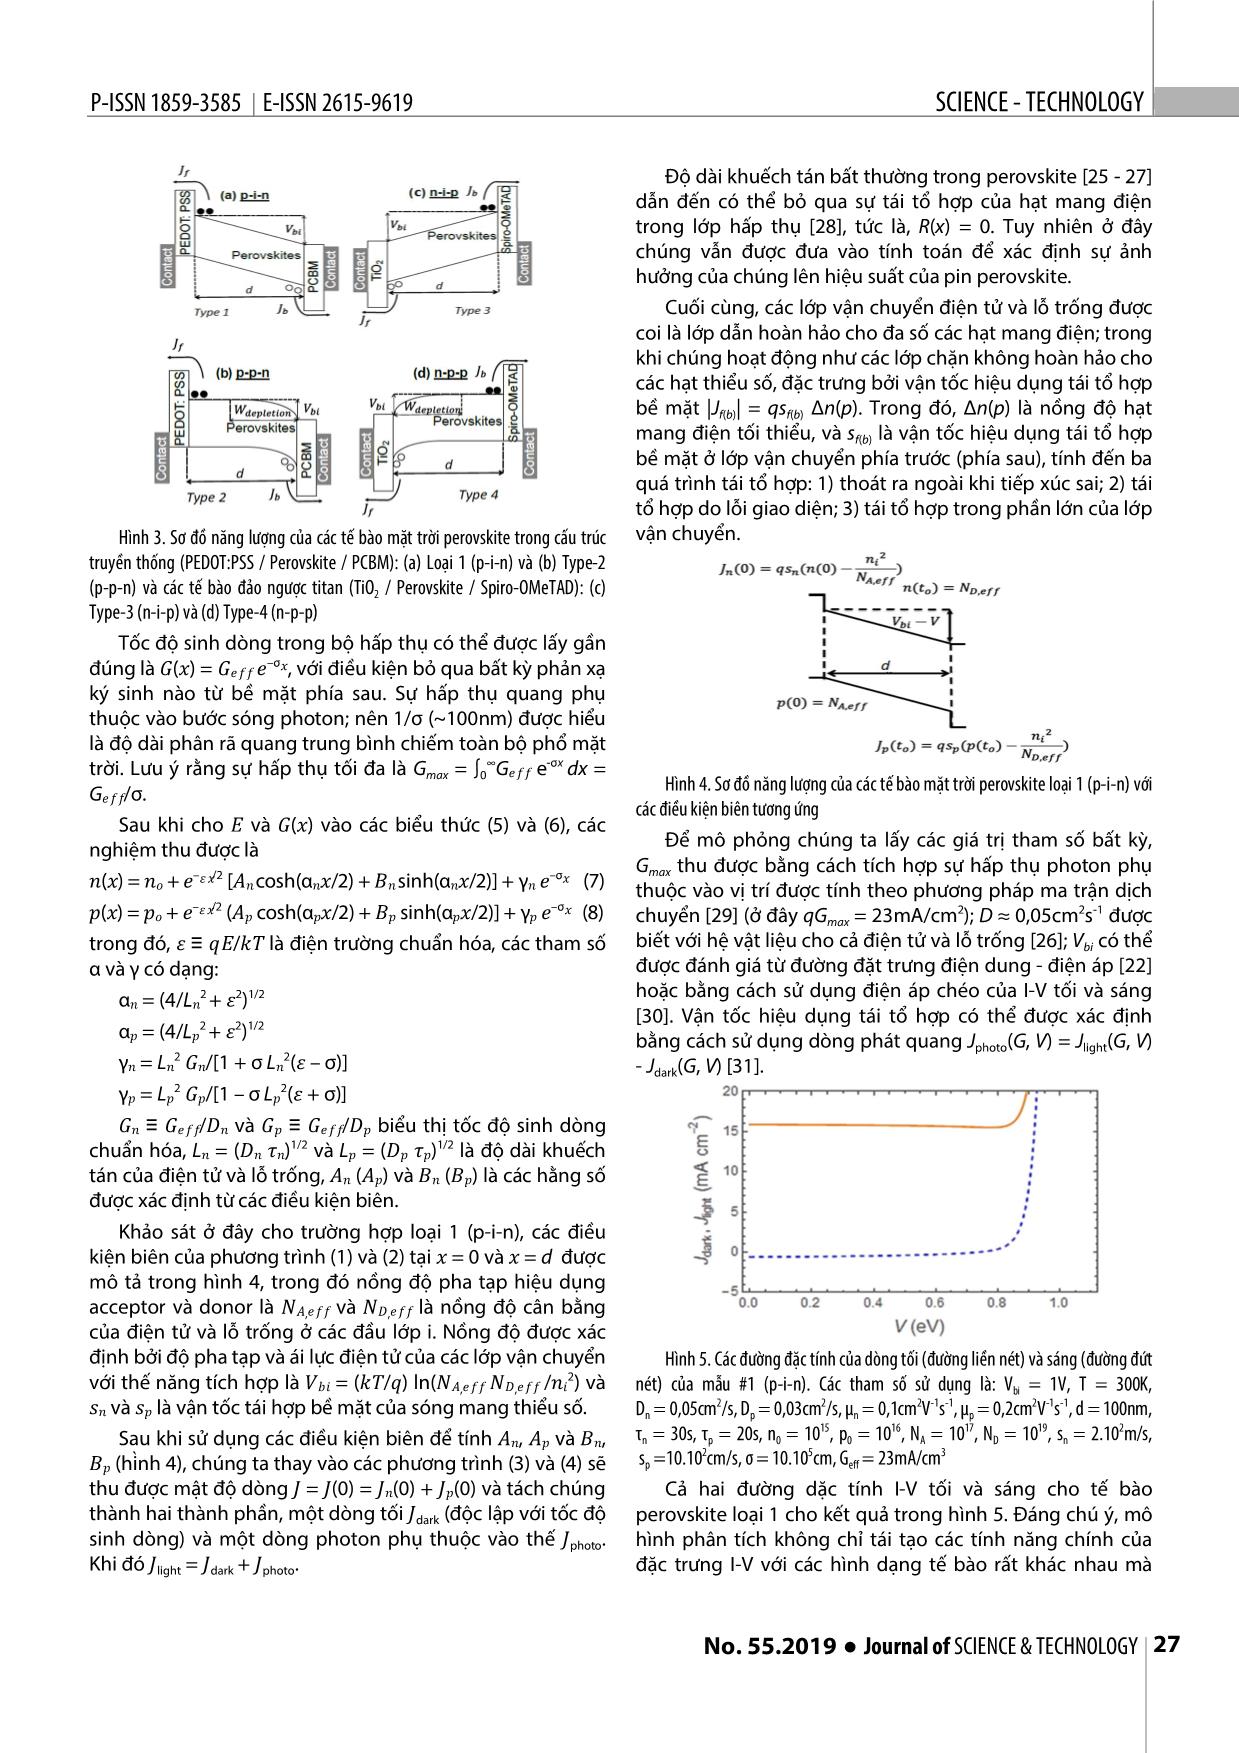 Xây dựng mô hình vật lý của pin mặt trời với vật liệu perovskite trang 4